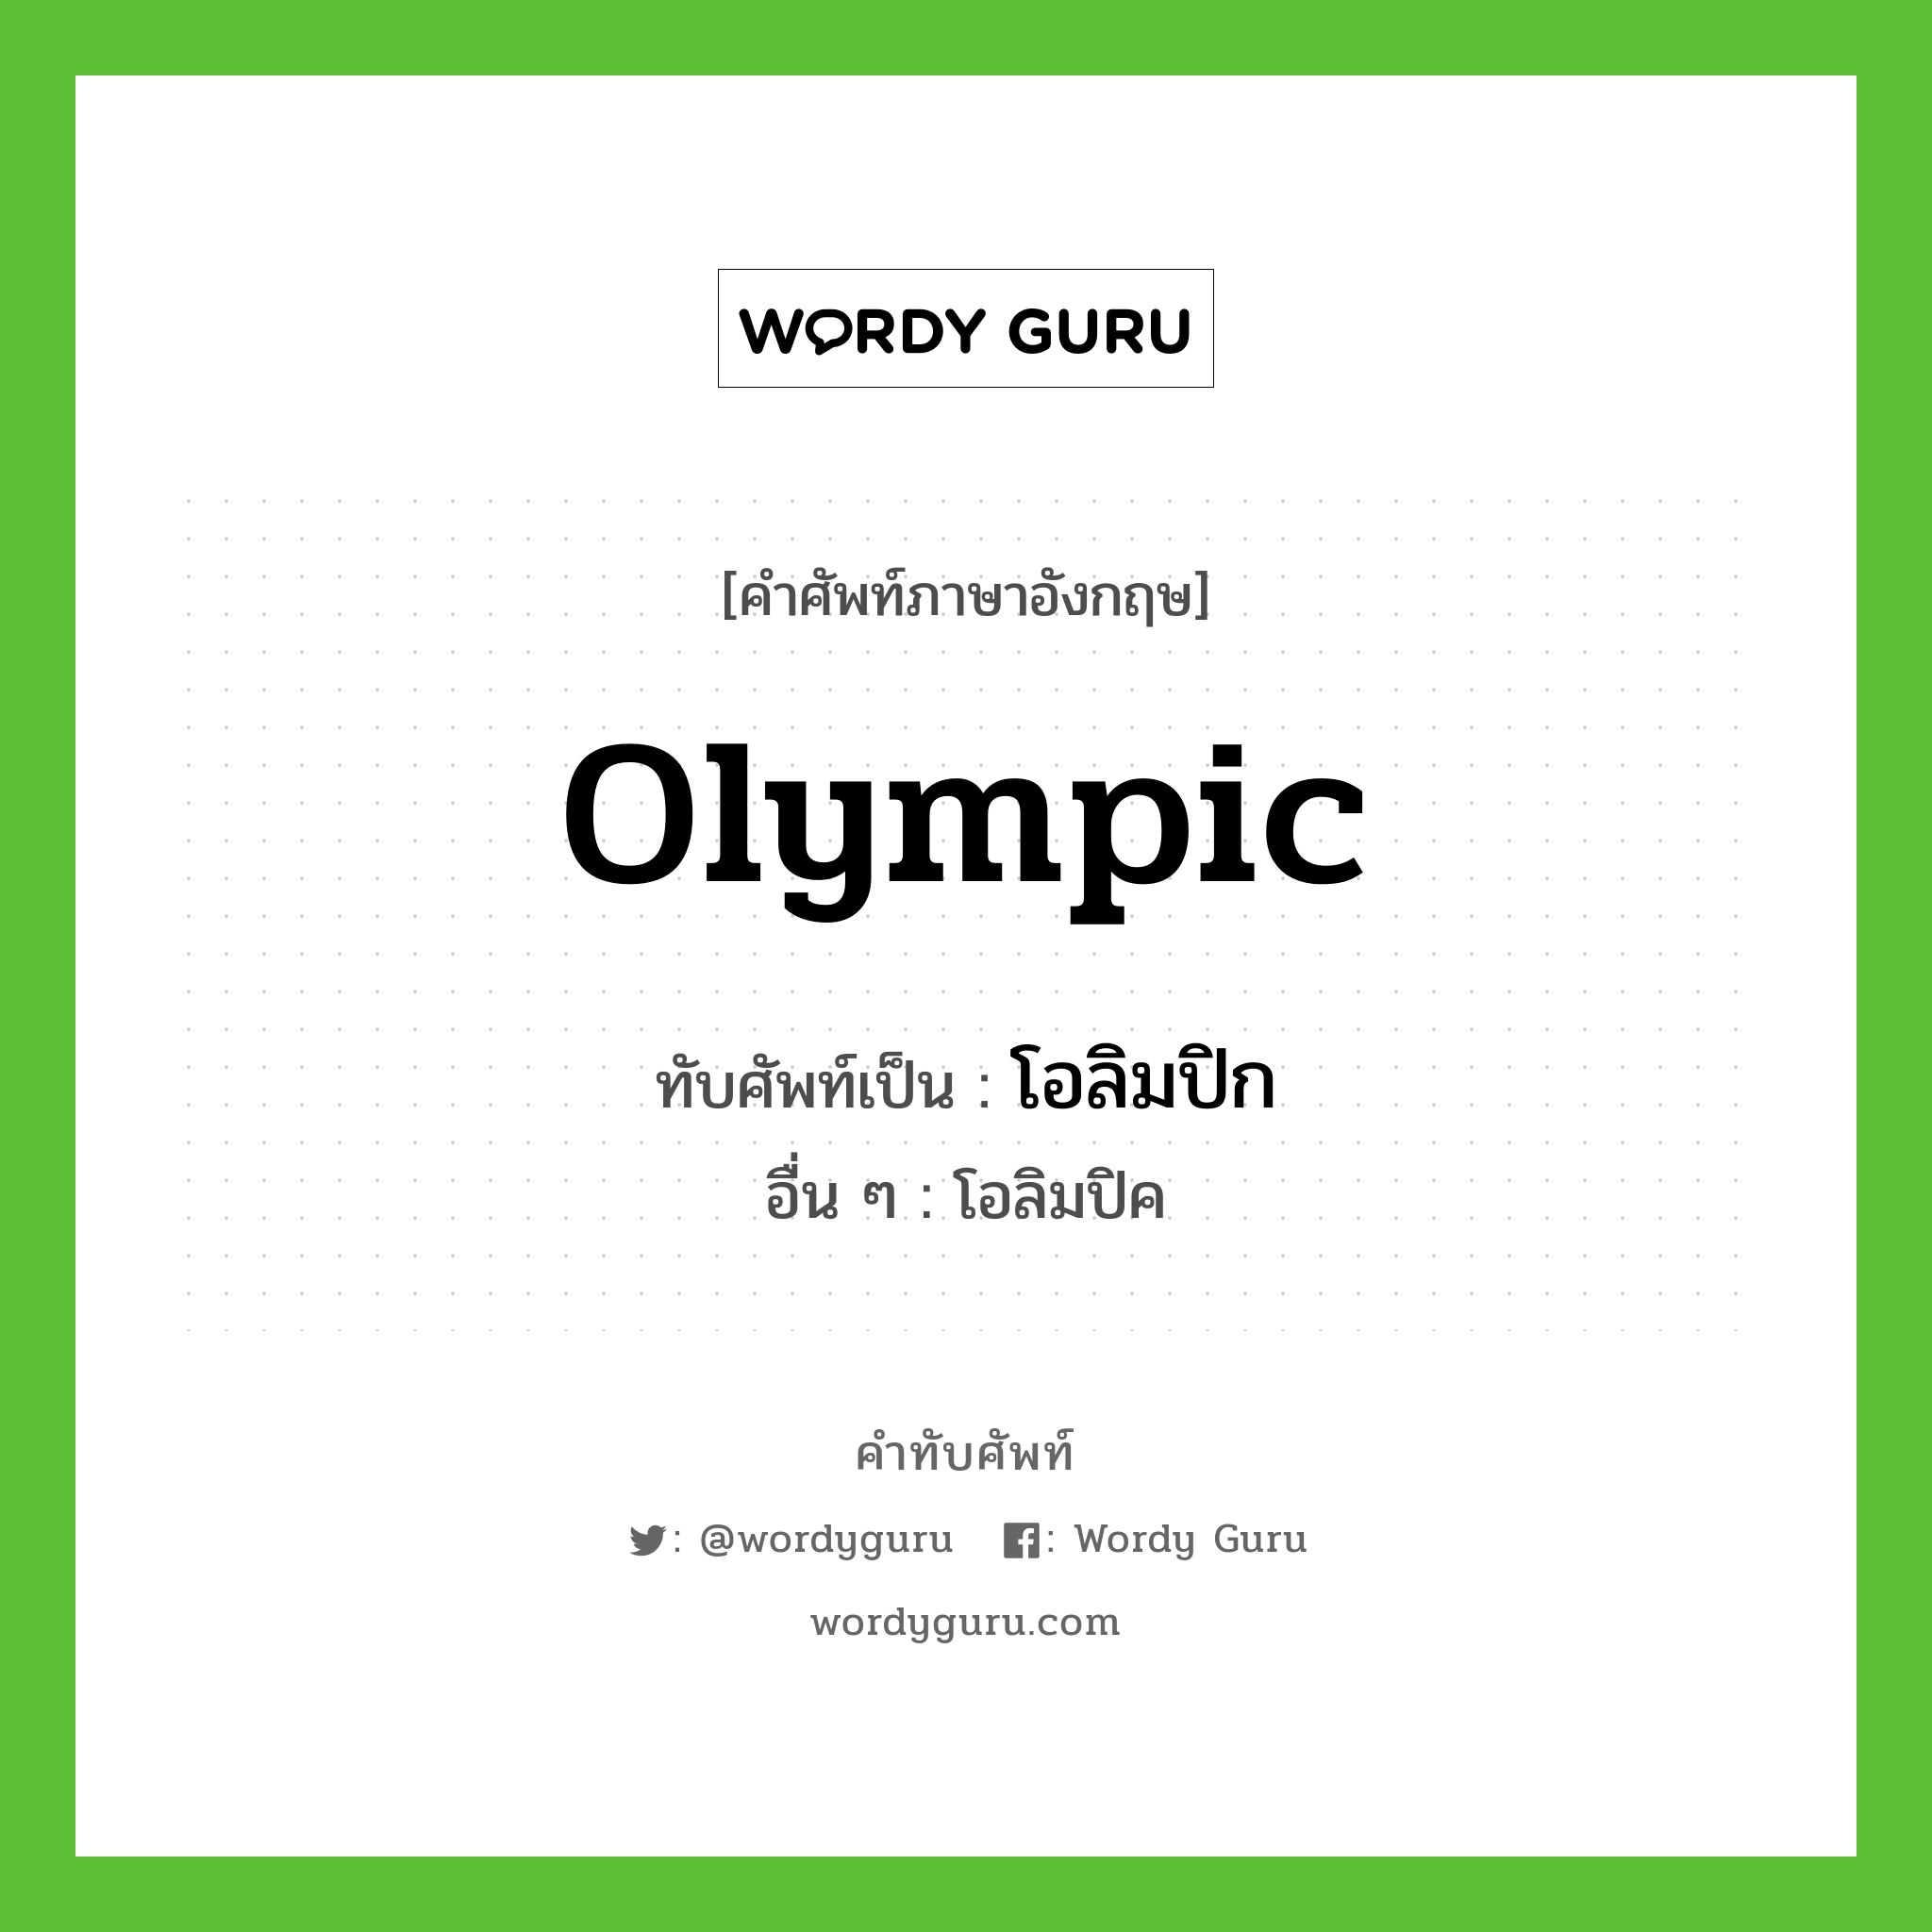 โอลิมปิก เขียนอย่างไร?, คำศัพท์ภาษาอังกฤษ โอลิมปิก ทับศัพท์เป็น Olympic อื่น ๆ โอลิมปิค